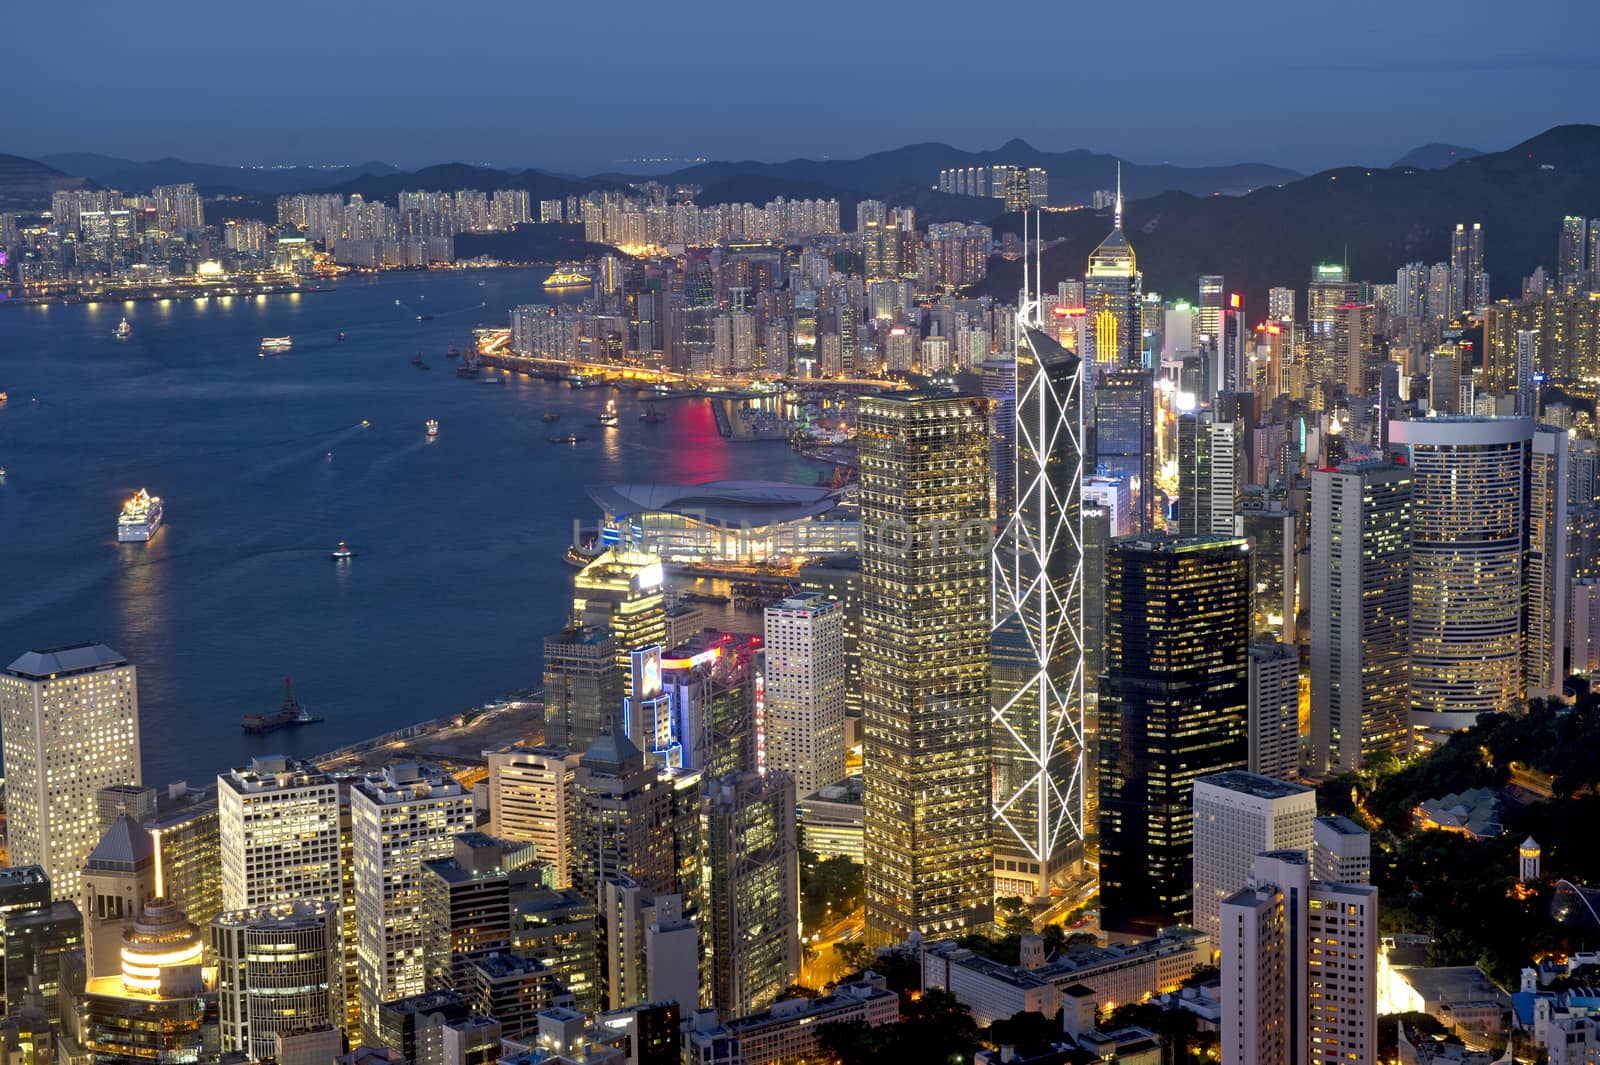 Hong Kong city at night by think4photop